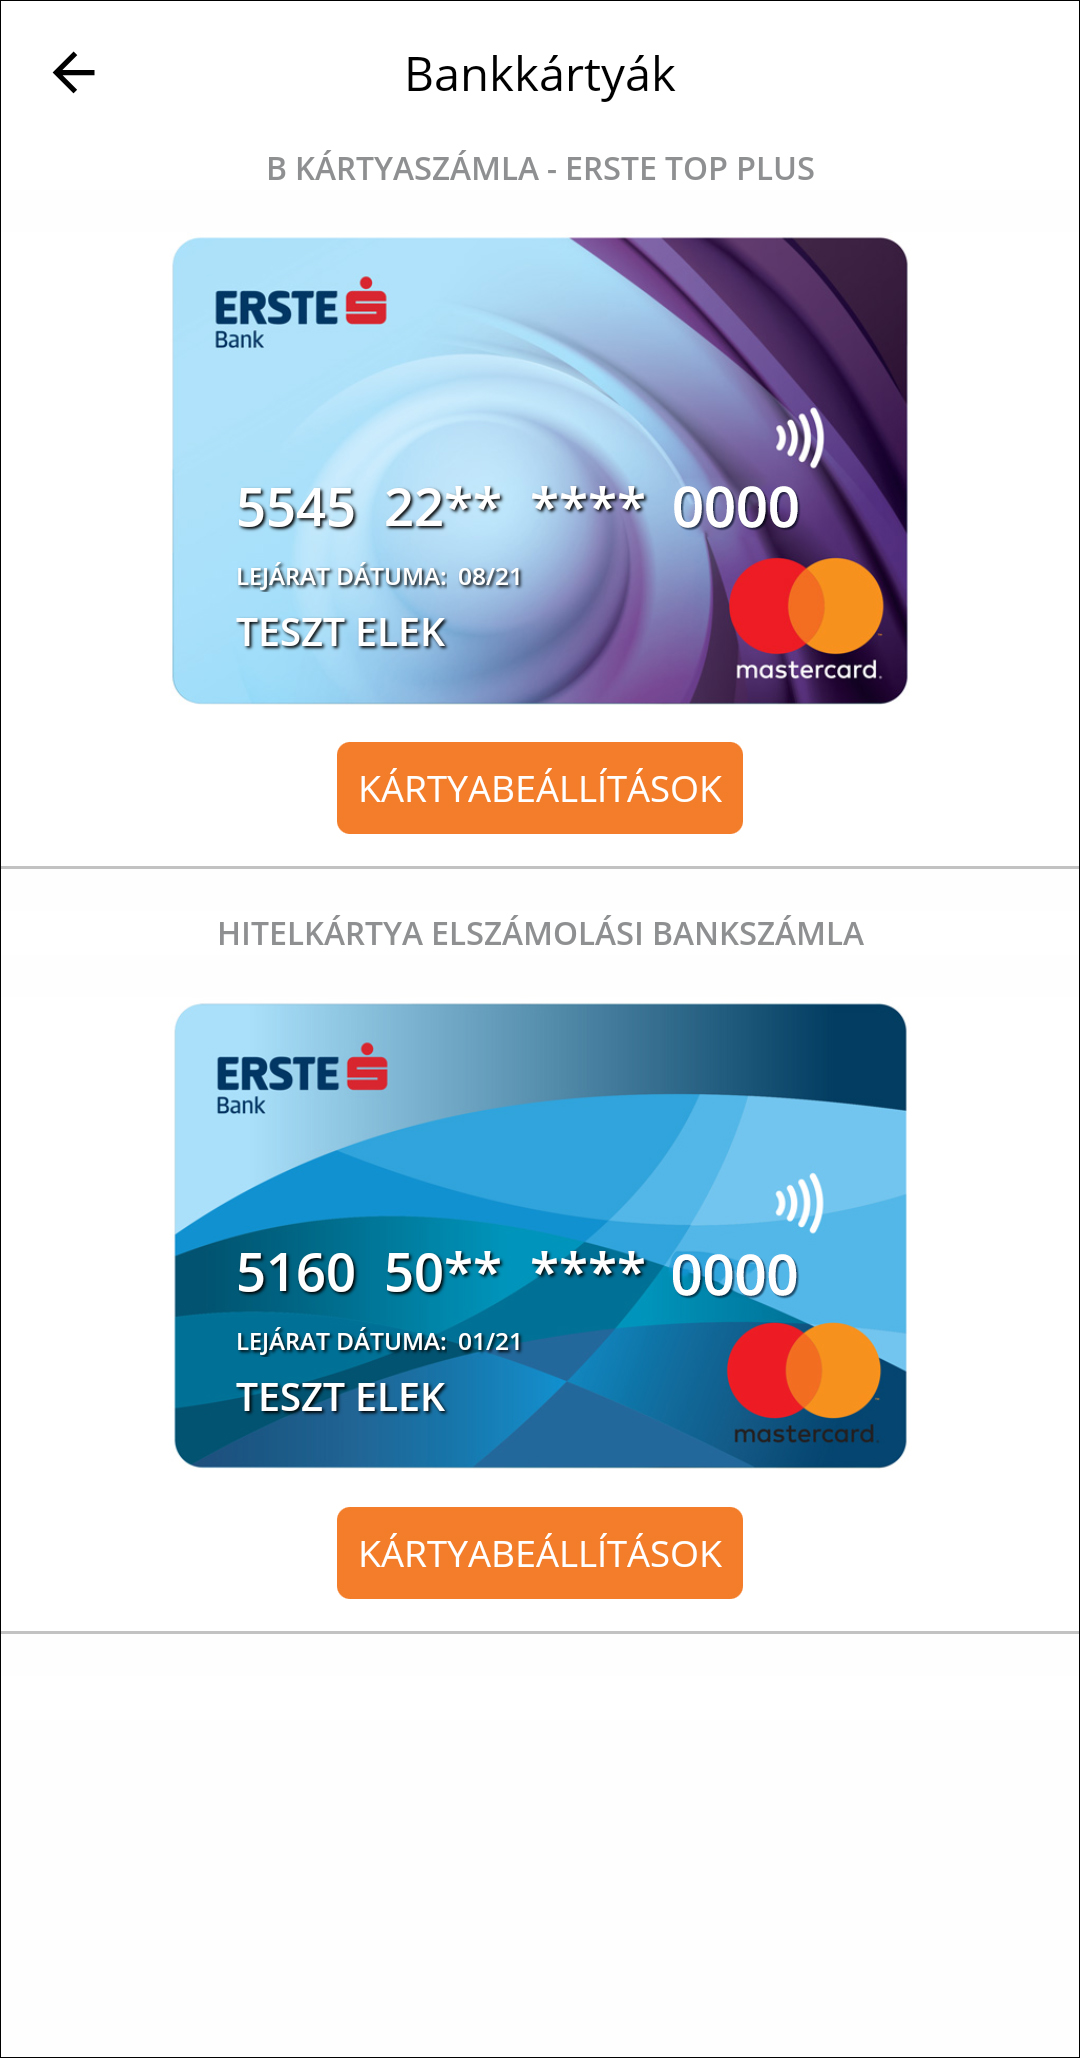 Elektronikus Banki Szolgáltatás Erste